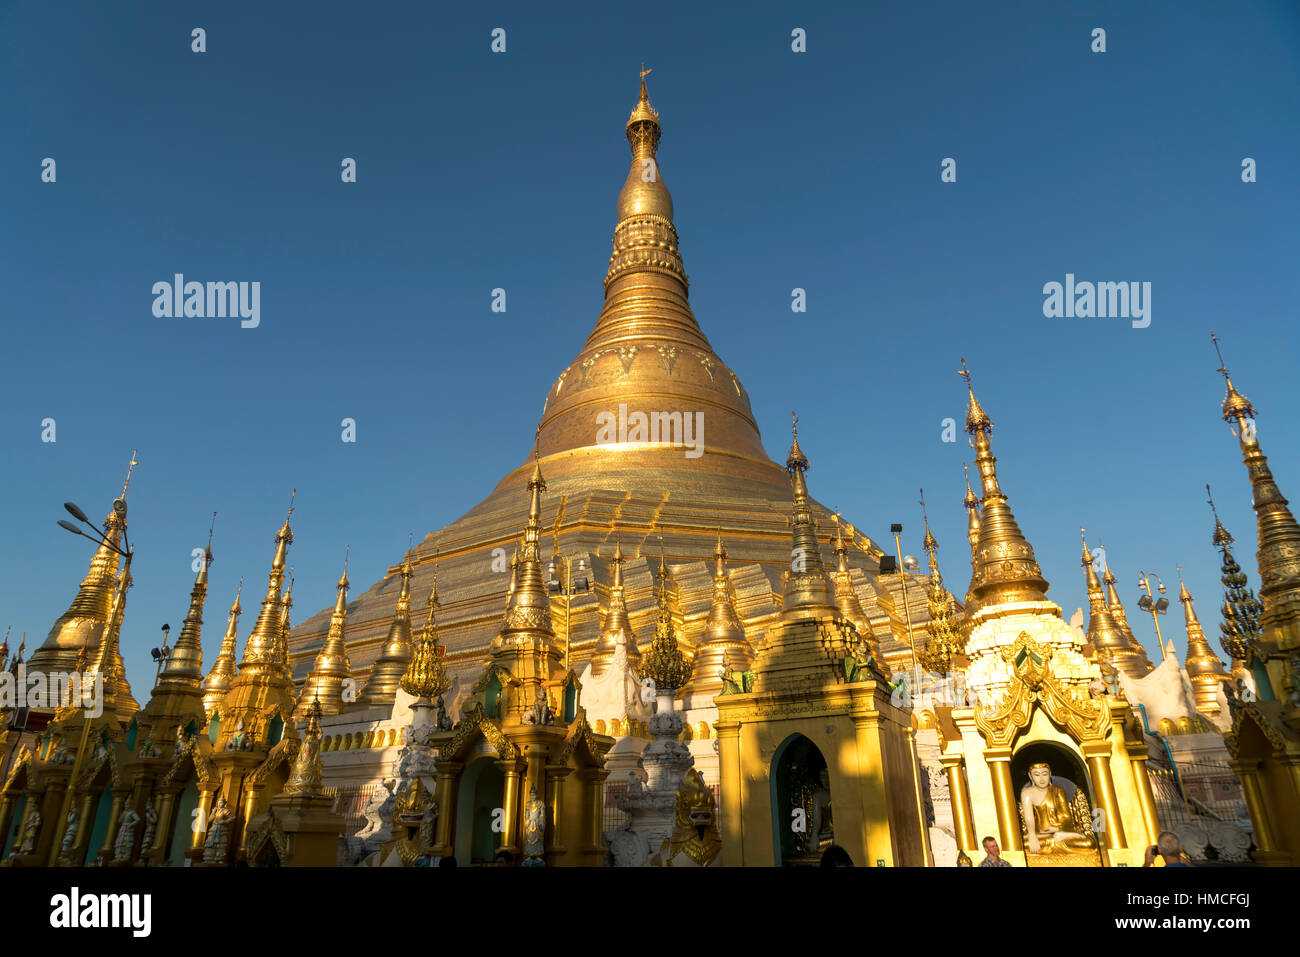 Shwedagon Pagoda in Yangon  or Rangoon, Myanmar, Asia Stock Photo